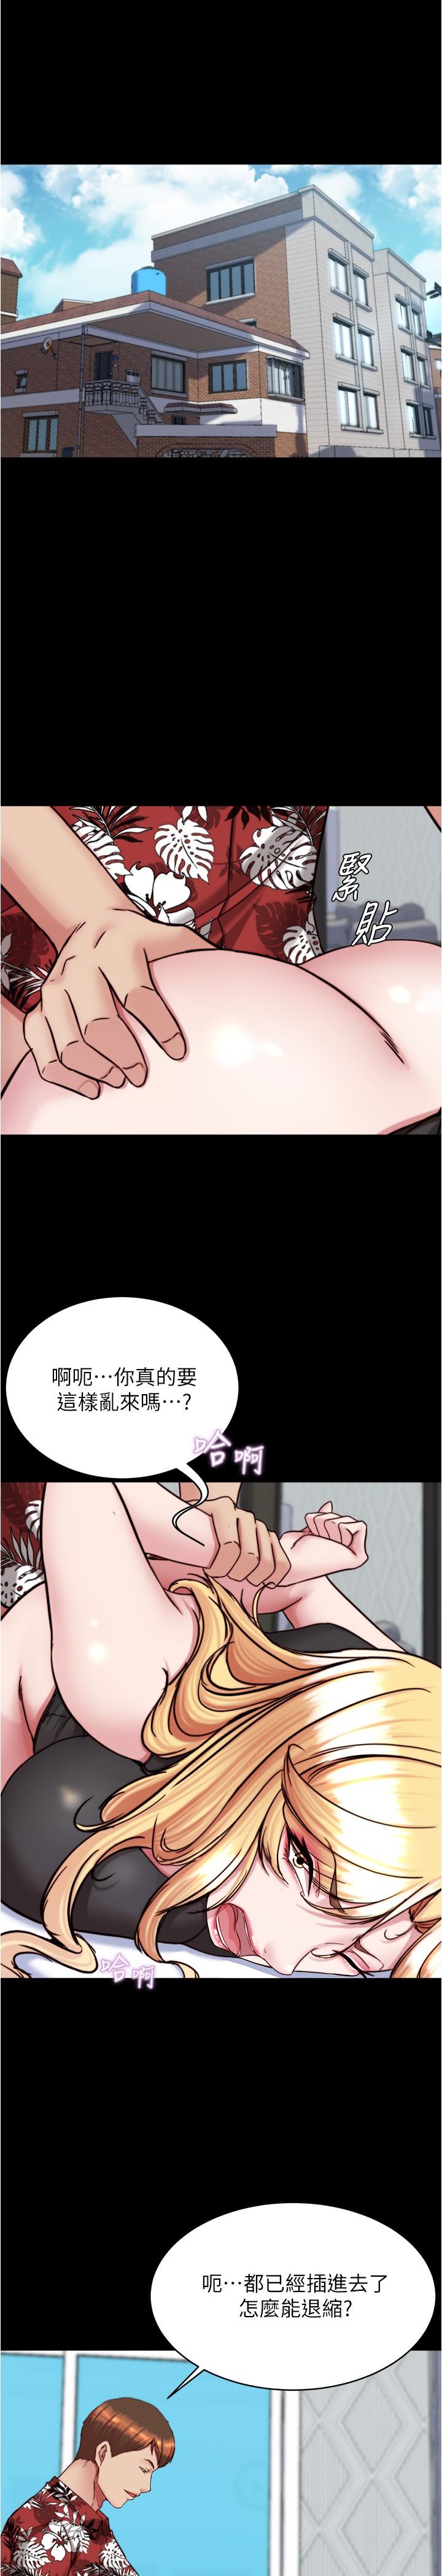 韩国污漫画 小褲褲筆記 第138话-成为性奴隶的穗桦 4